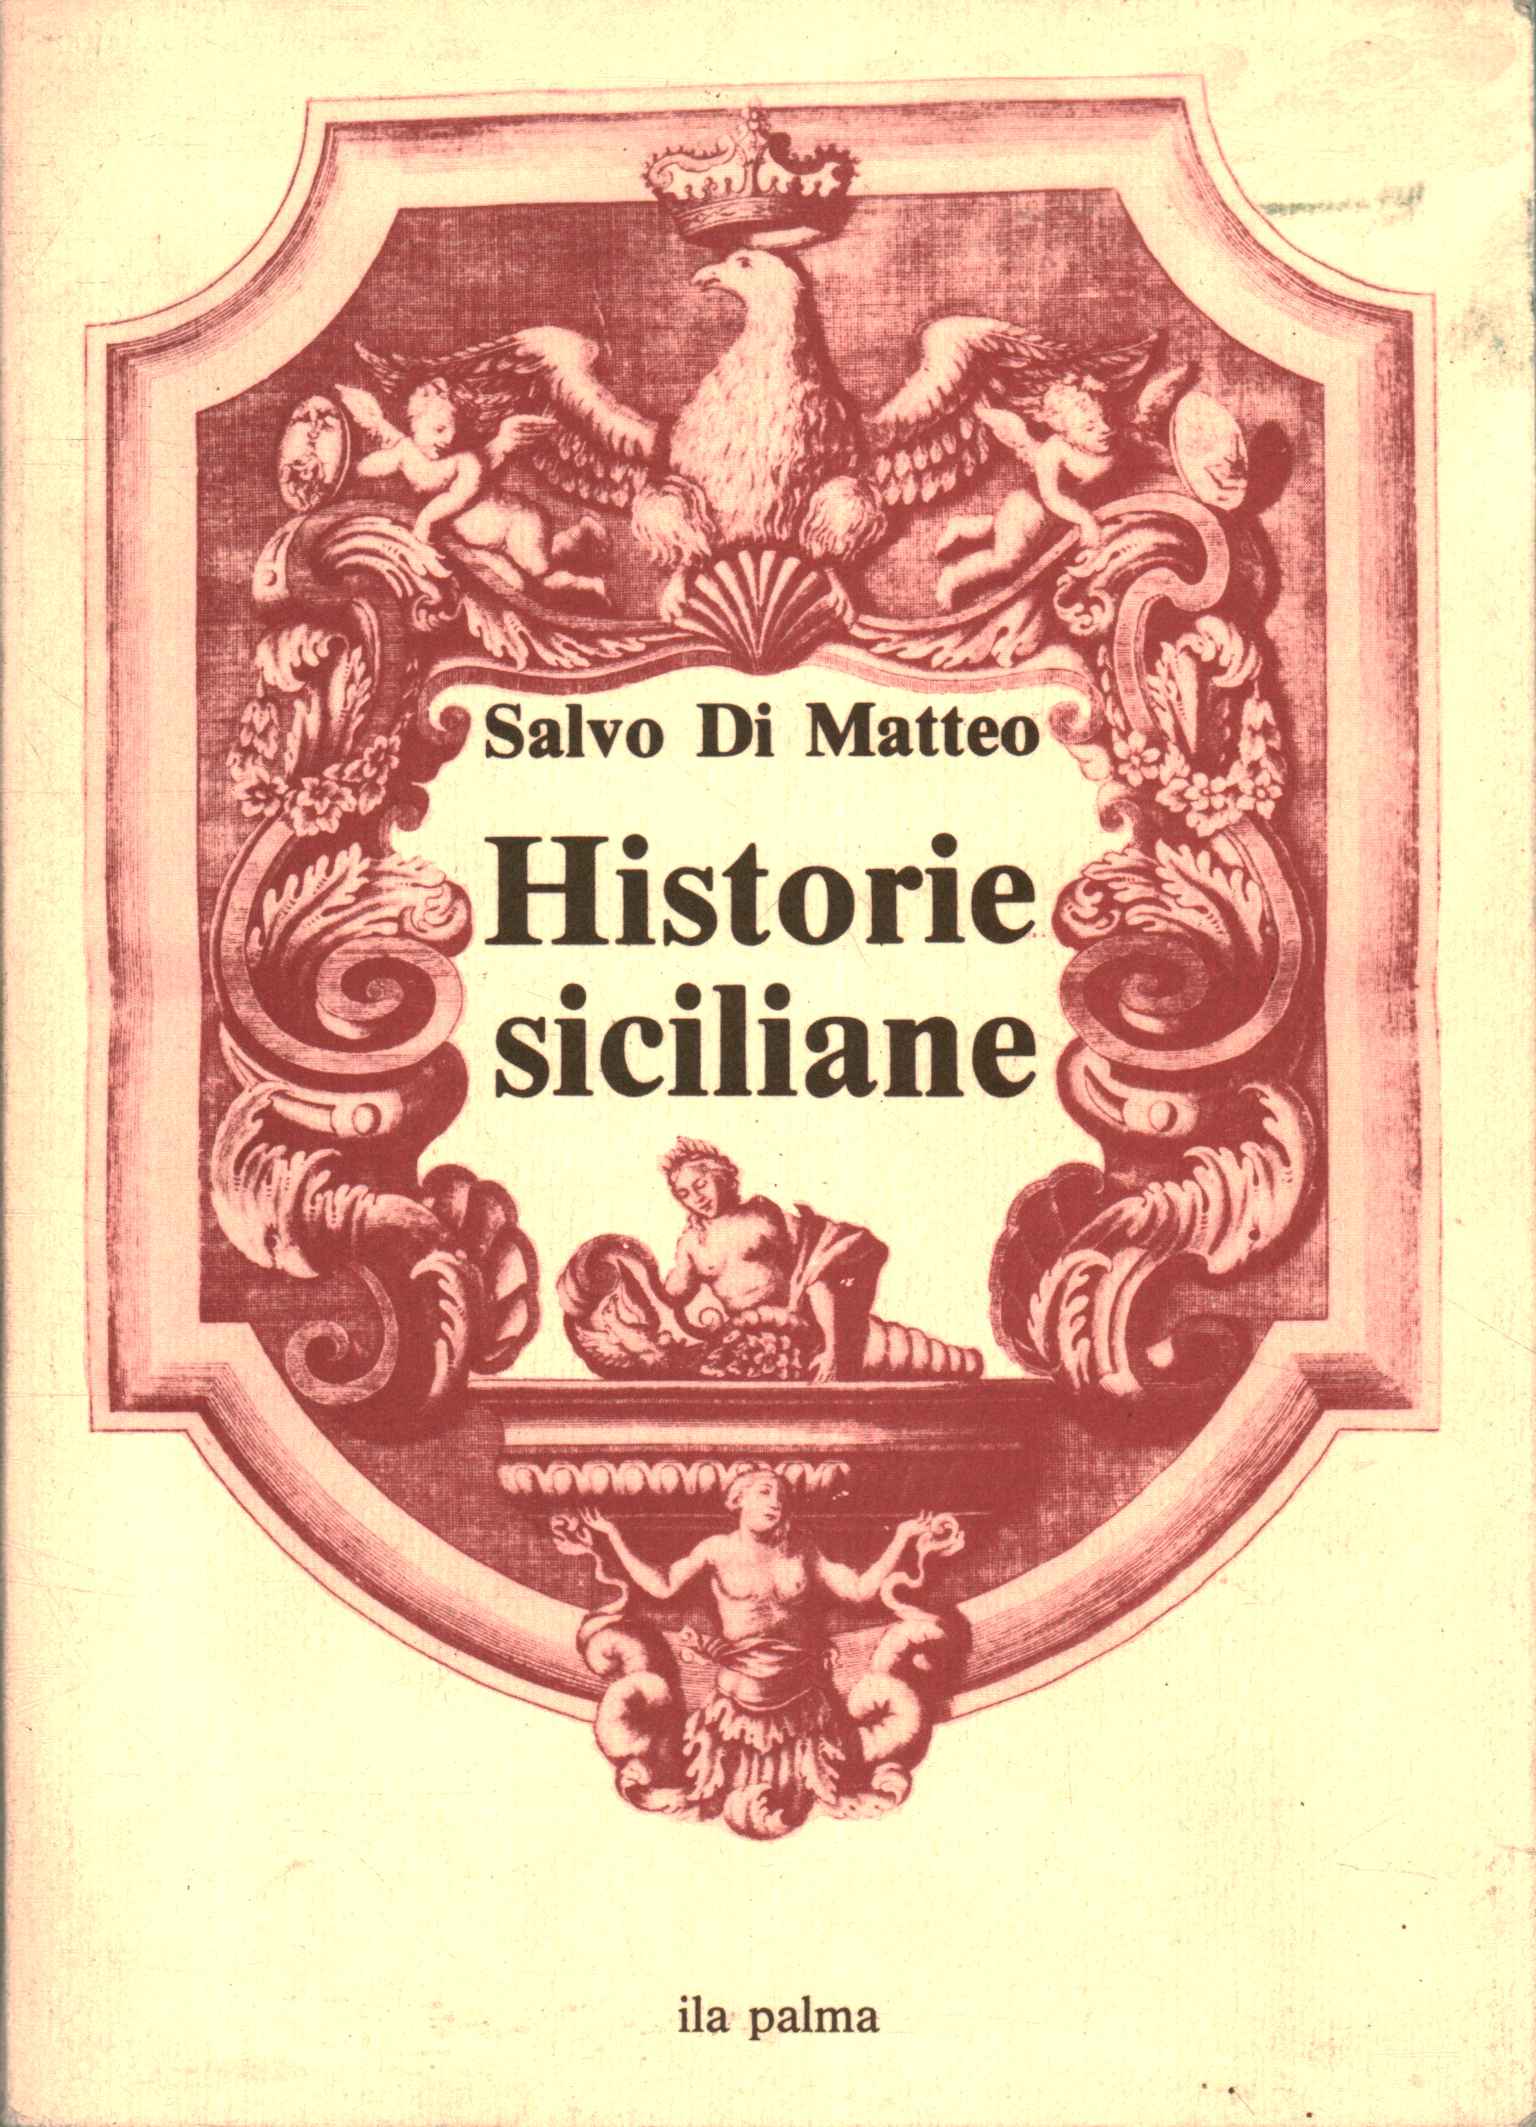 Historias sicilianas